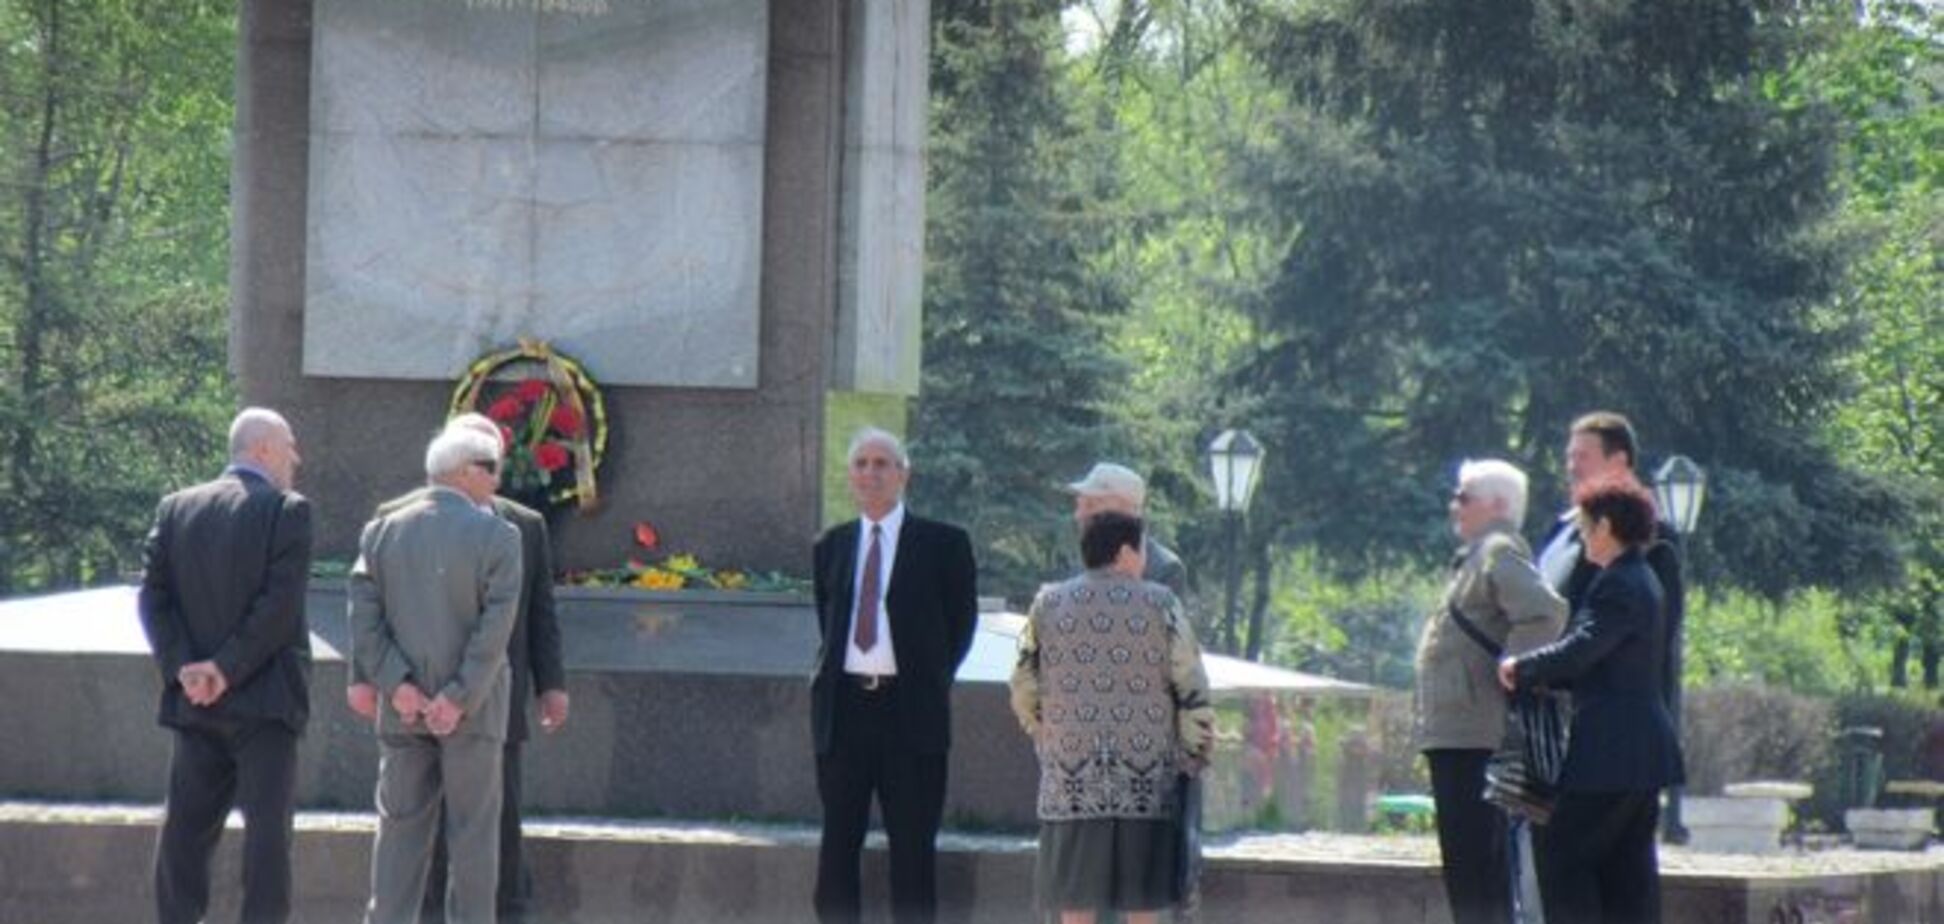 Москаль: в Северодонецке 10 коммунистов вспомнили дешевую колбасу и разошлись - фотофакт